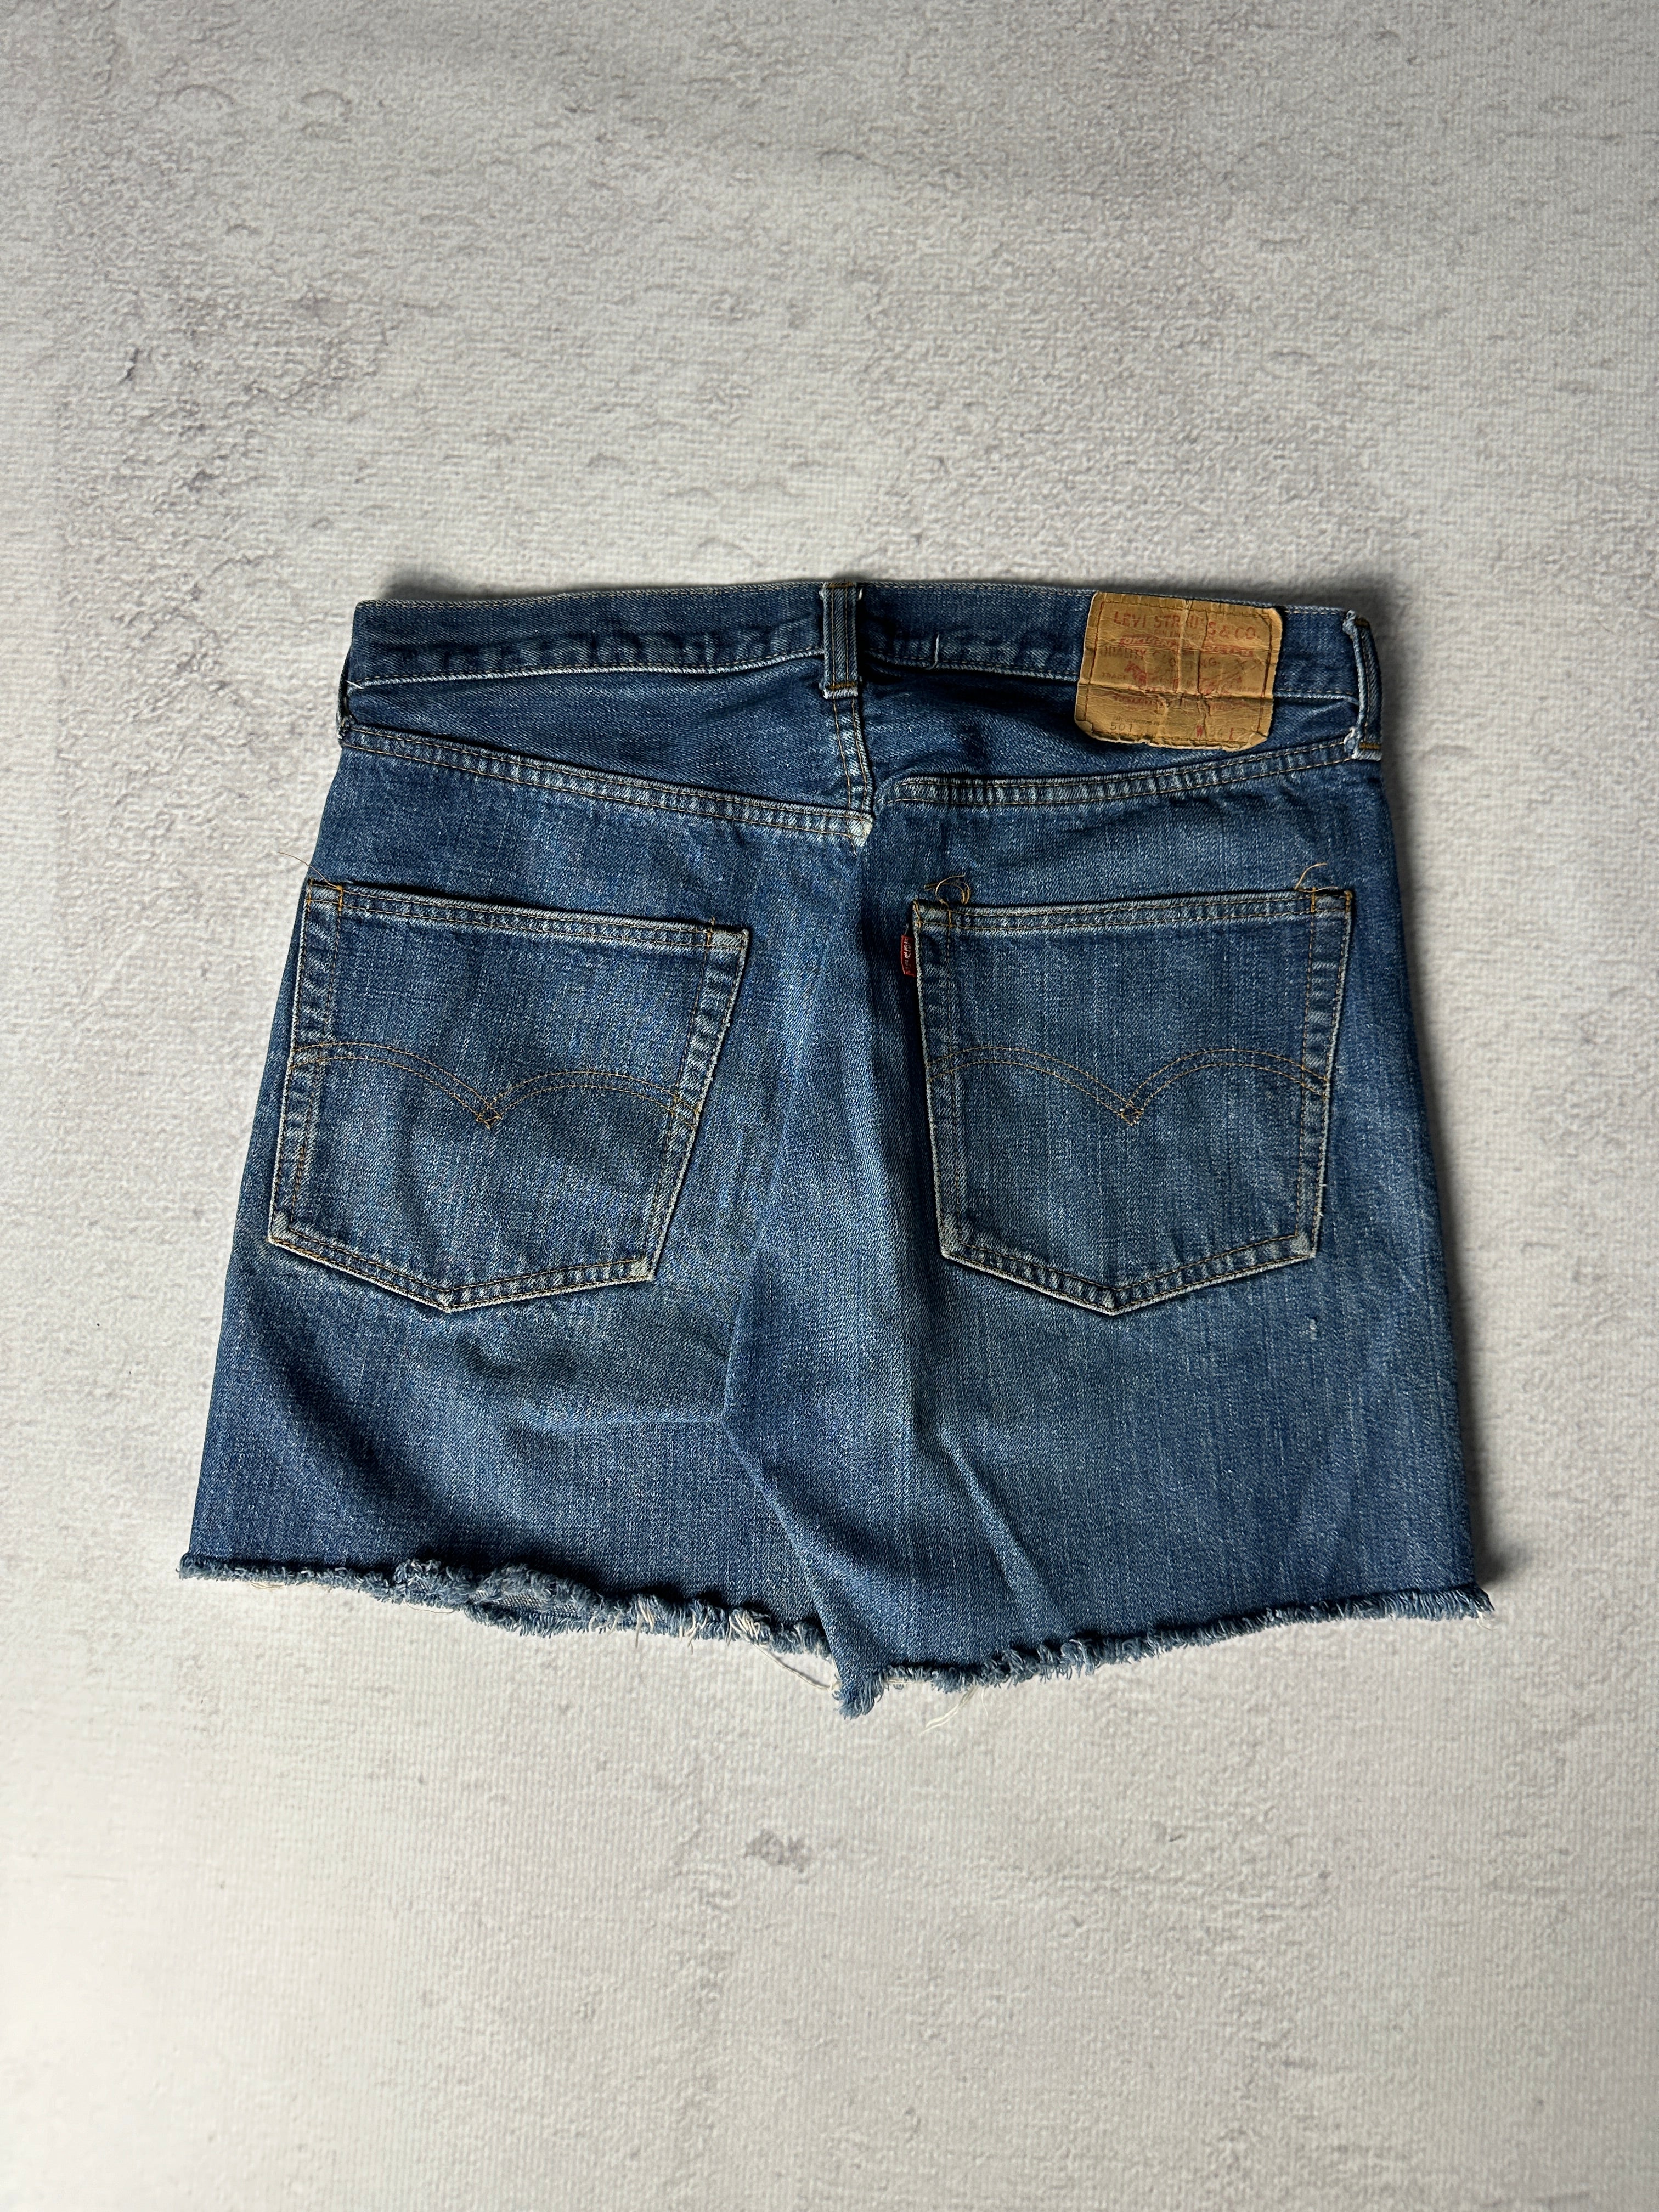 Vintage Levis 501 Jean Shorts - Women's 34W5L